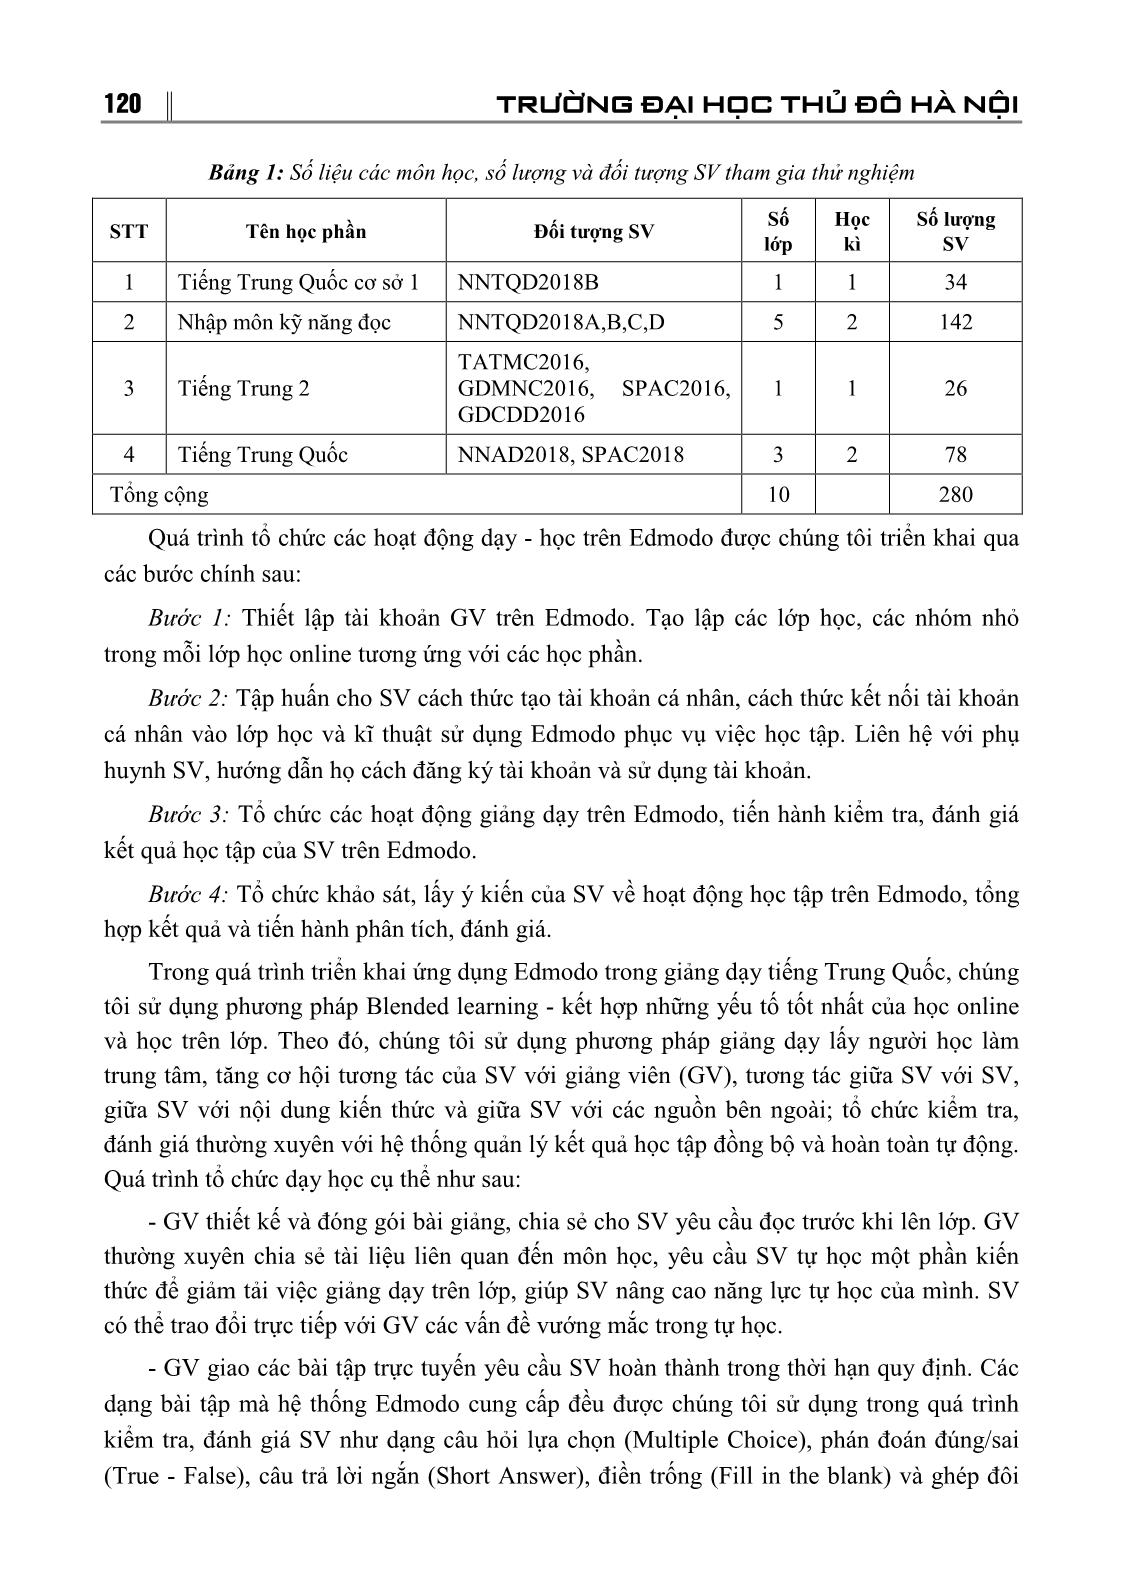 Ứng dụng mạng xã hội học tập Edmodo vào giảng dạy tiếng Trung Quốc giai đoạn cơ sở tại trường Đại học Thủ đô Hà Nội trang 3